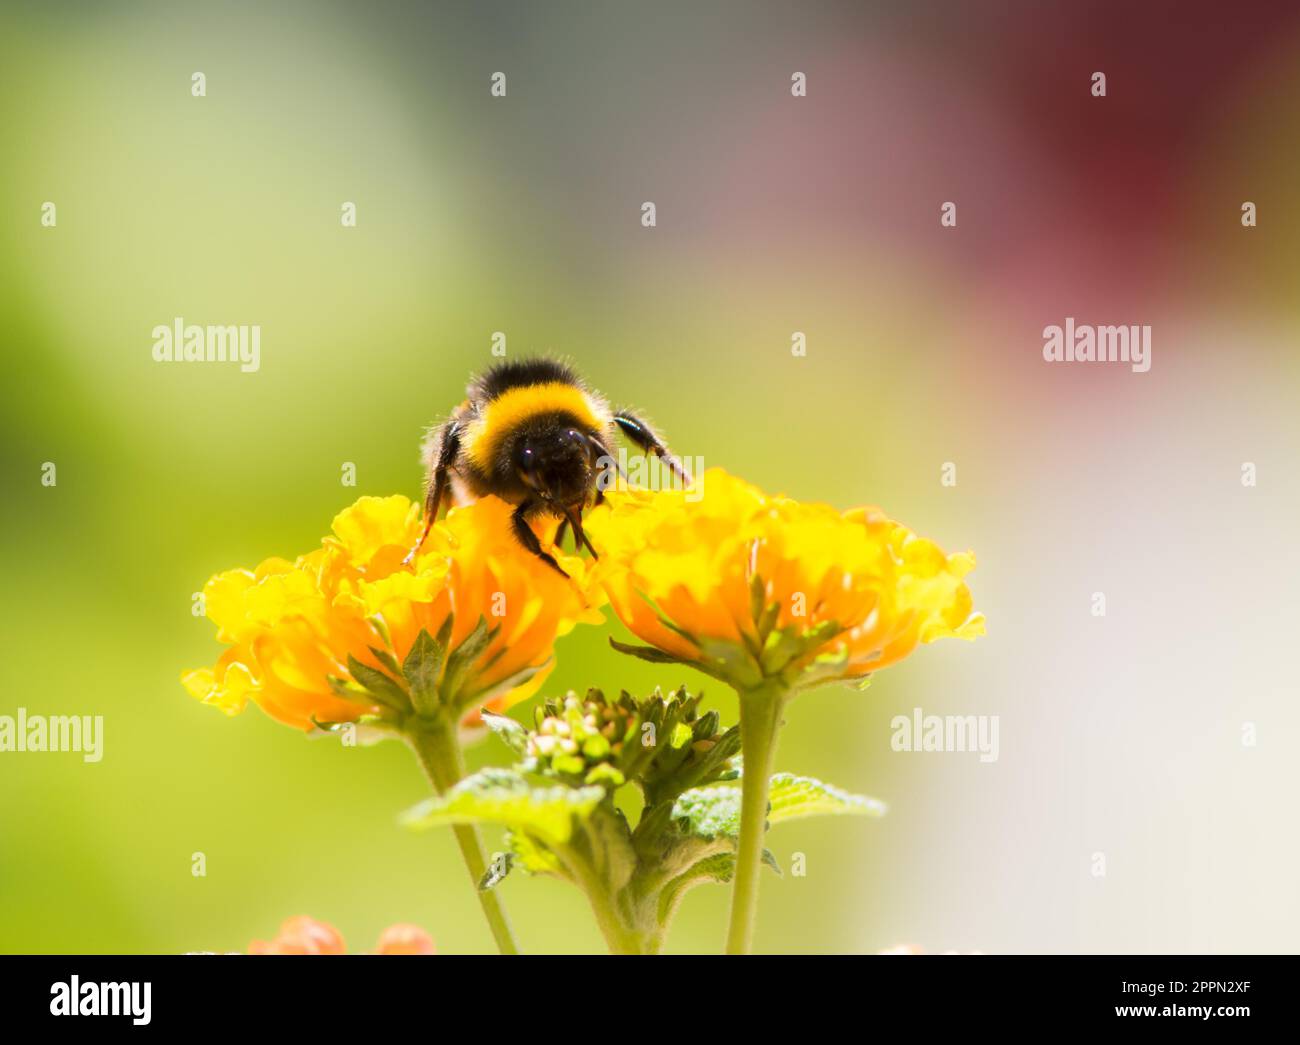 Bumblebee collecting pollen on a lantana camara flower Stock Photo